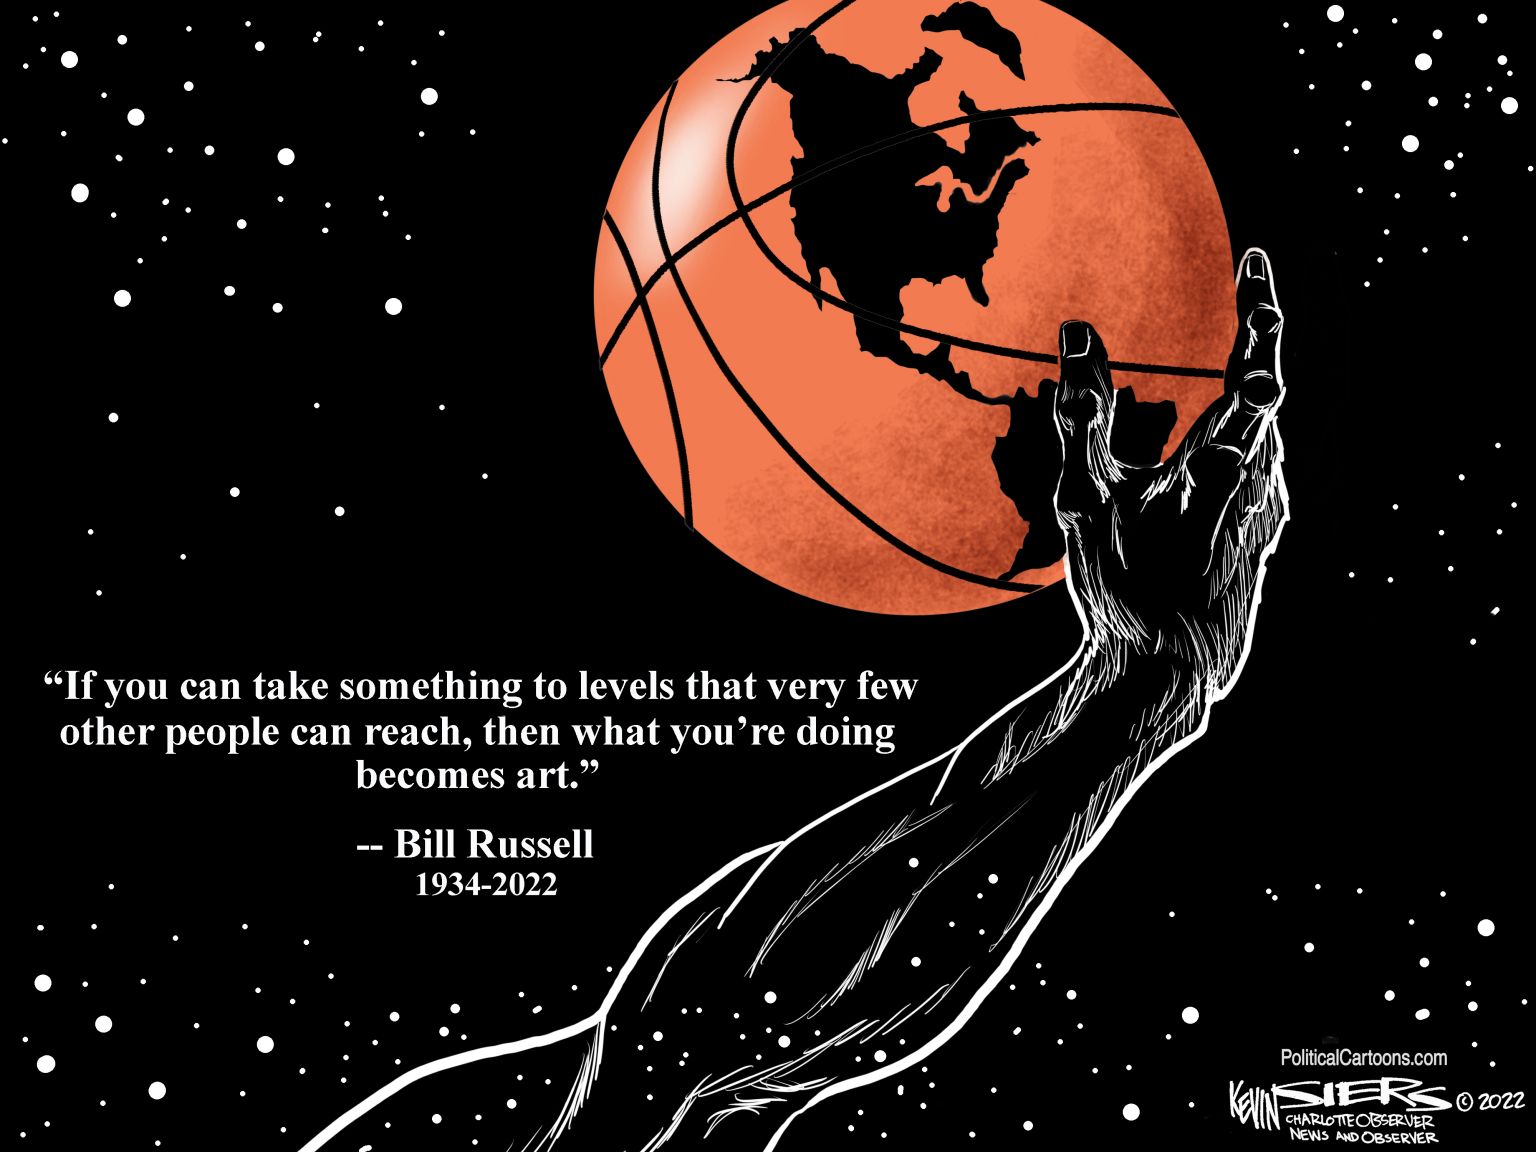 Bill Russell - newsjustin.press editorial cartoon